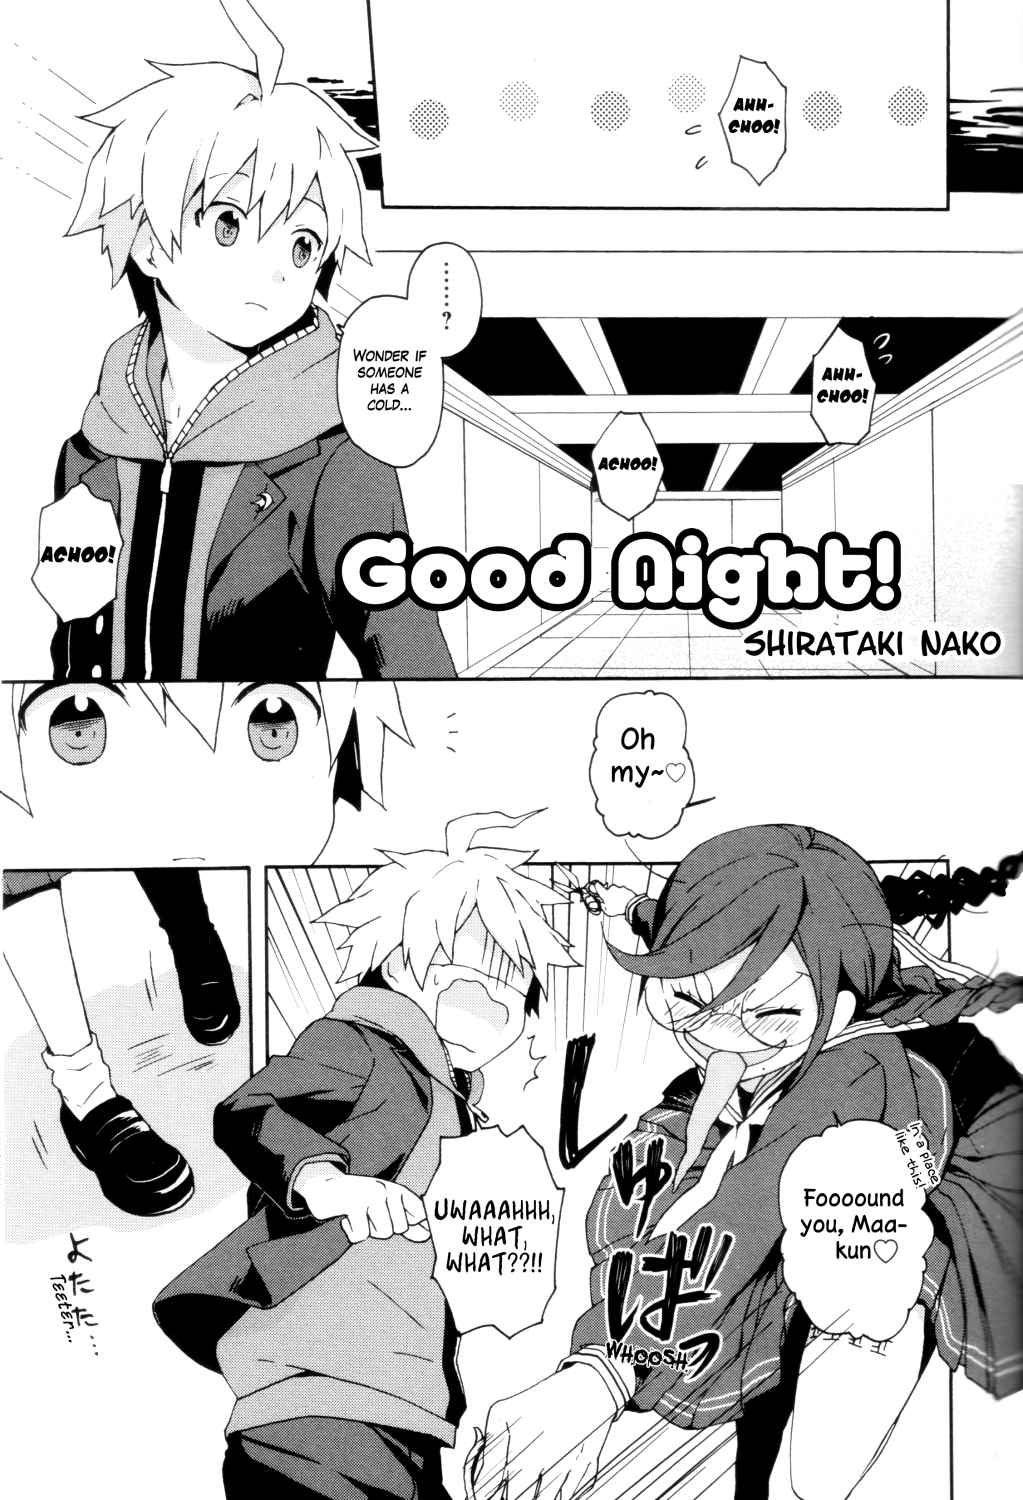 Danganronpa 1&2 Comic Anthology Vol. 1 Ch. 5 Good Night! by Shirataki Nako